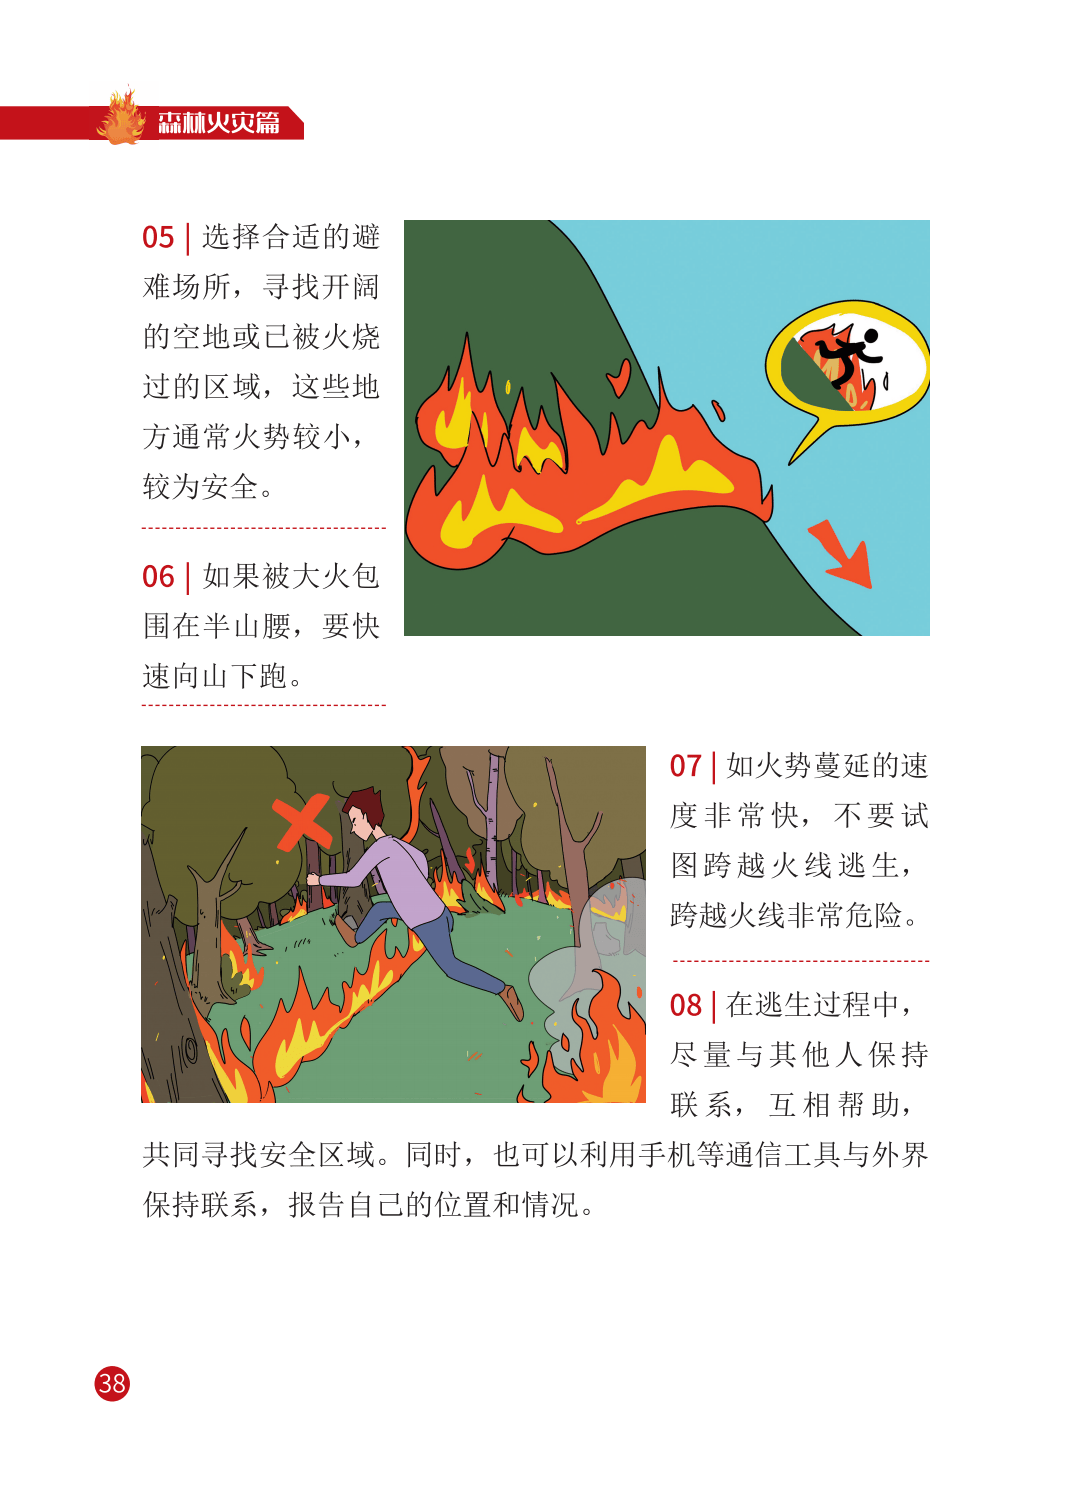 【公益警示】全国防灾减灾日——提高防灾避险能力之火灾篇